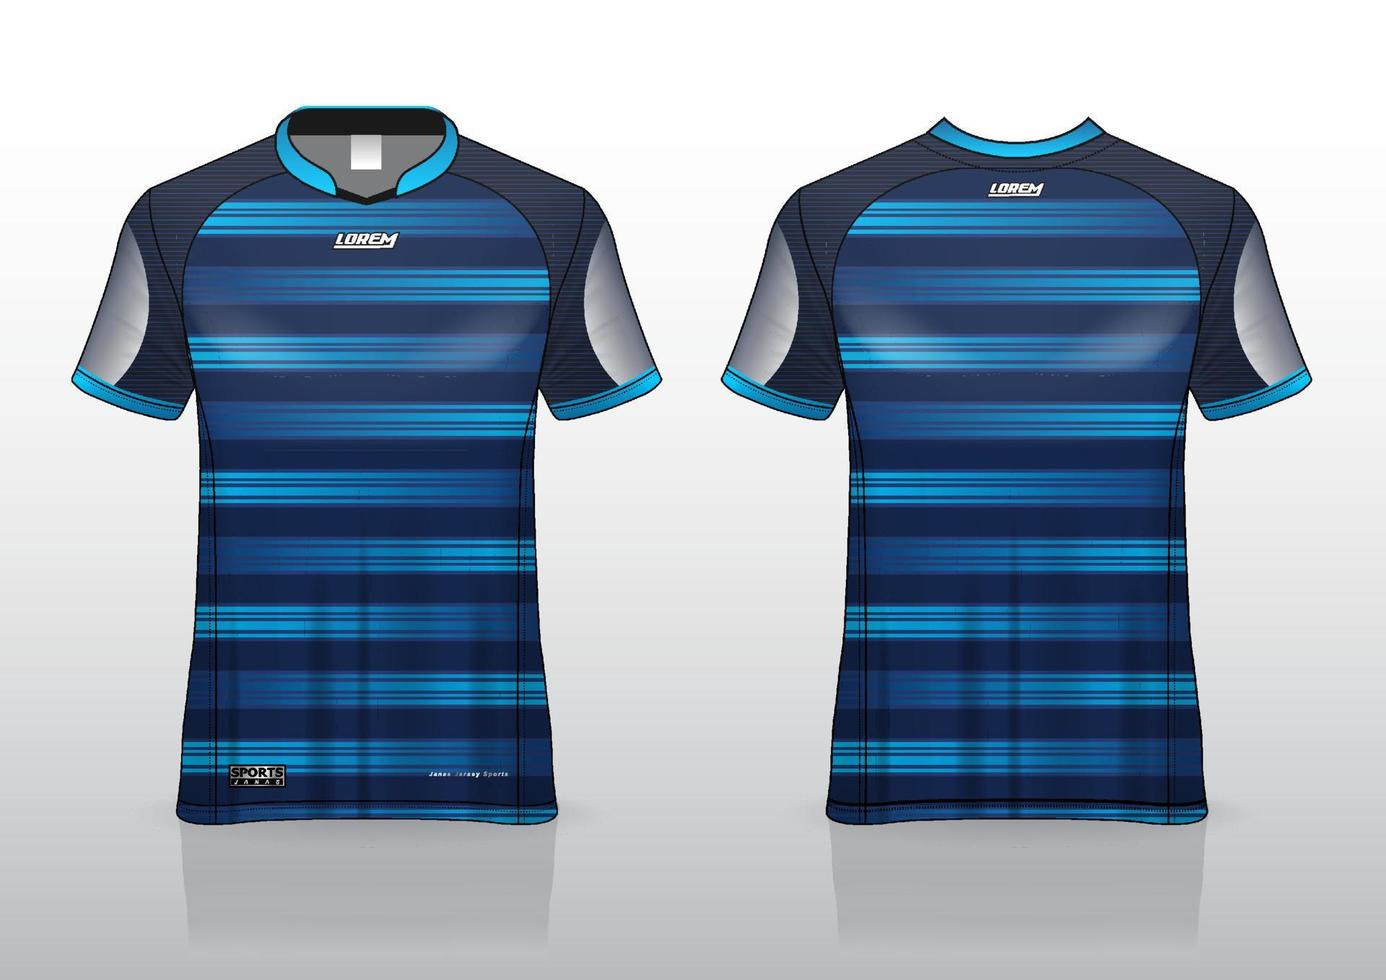 design de camisa de futebol para esportes ao ar livre vetor